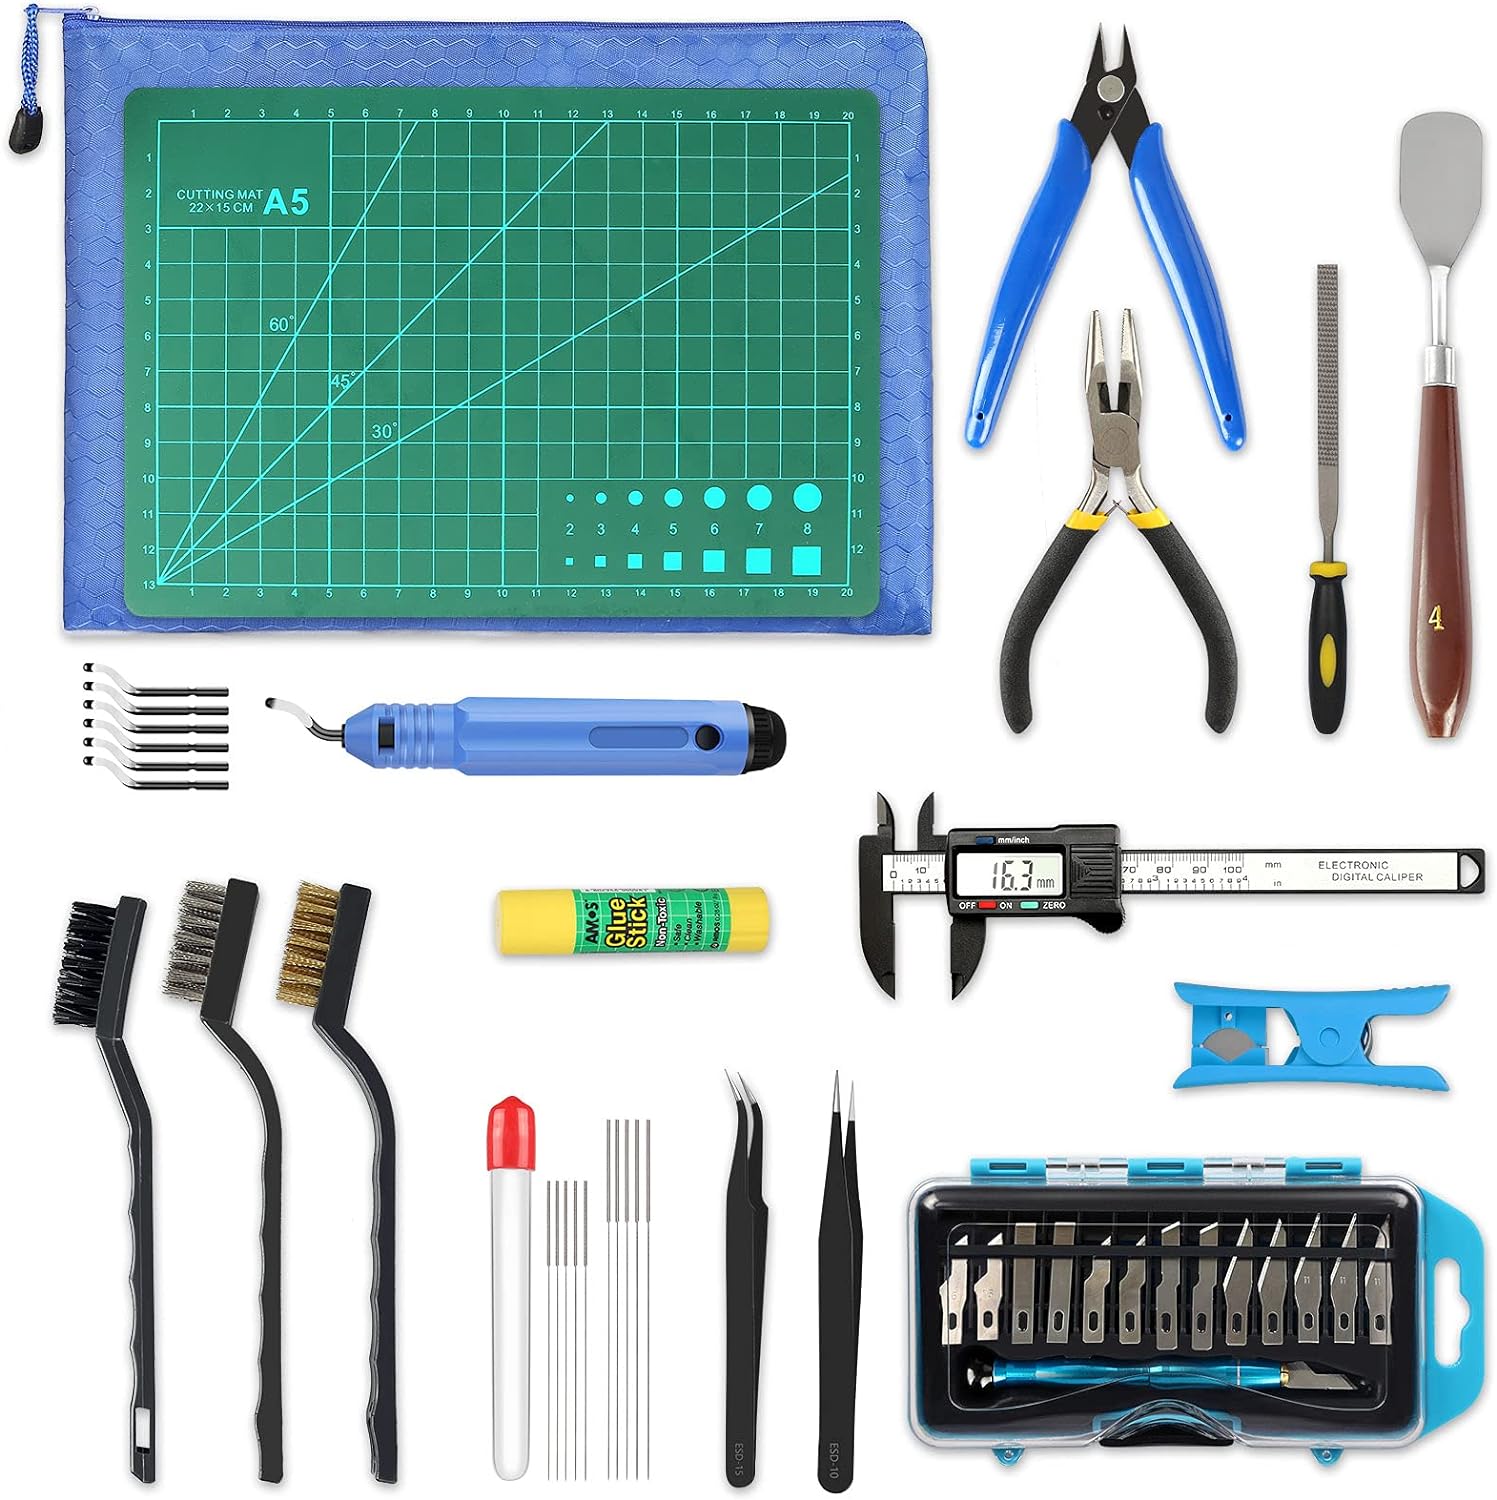 45-pieces-3d-printer-tools-kit-3d-printing-accessory-includes-deburring-tool-digital-caliper-art-knife-set-tube-cutter-s 45 Pieces 3D Printer Tools Kit Review